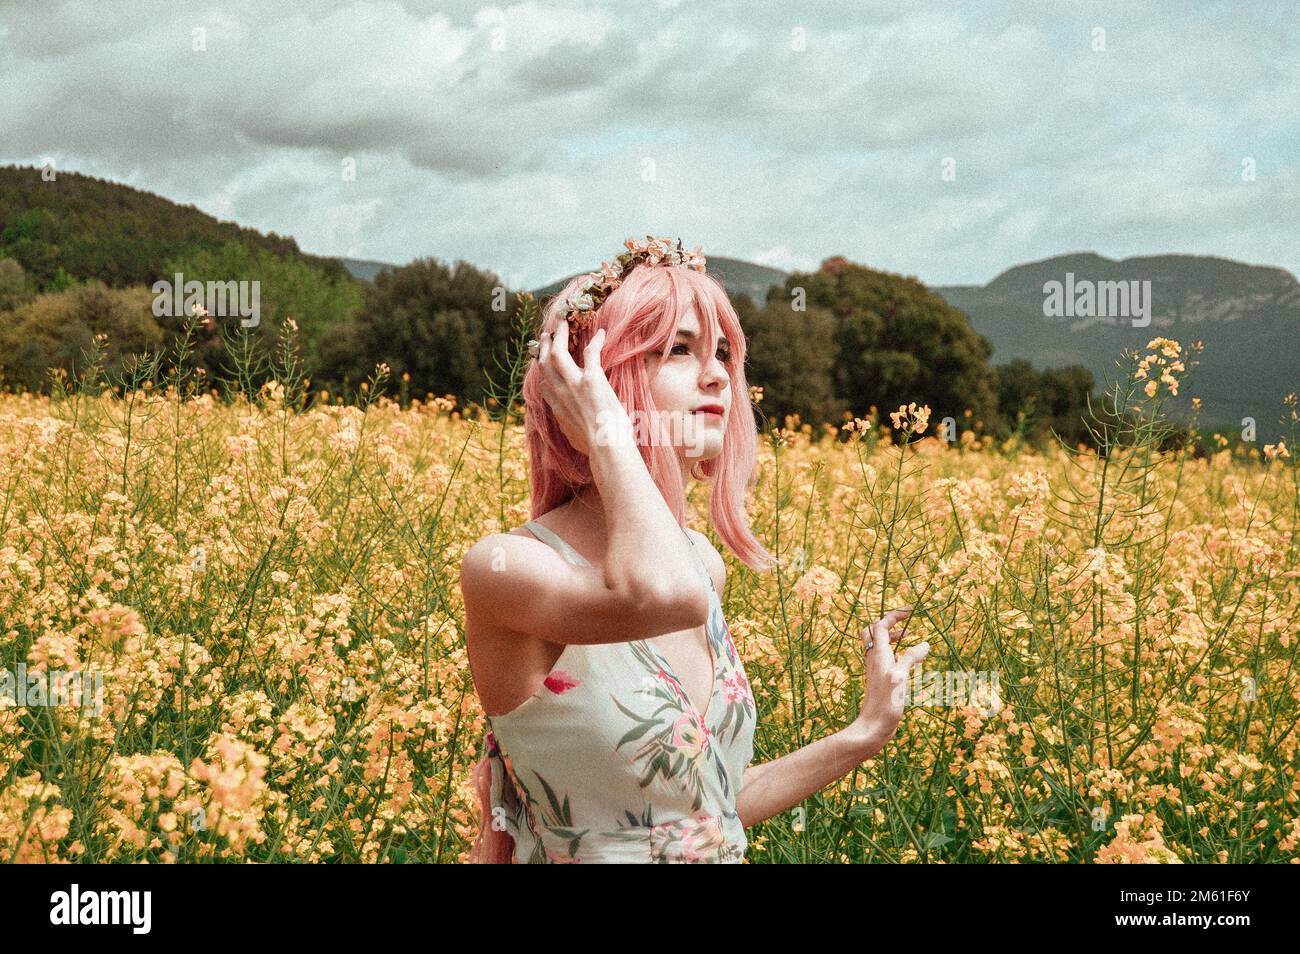 Mädchen in einem langen Sommerkleid, trägt eine rosa Perücke und eine Blumenkrone, Bilder auf einem Blumenfeld, mit klarem Himmel und traumhaftem Filter Stockfoto